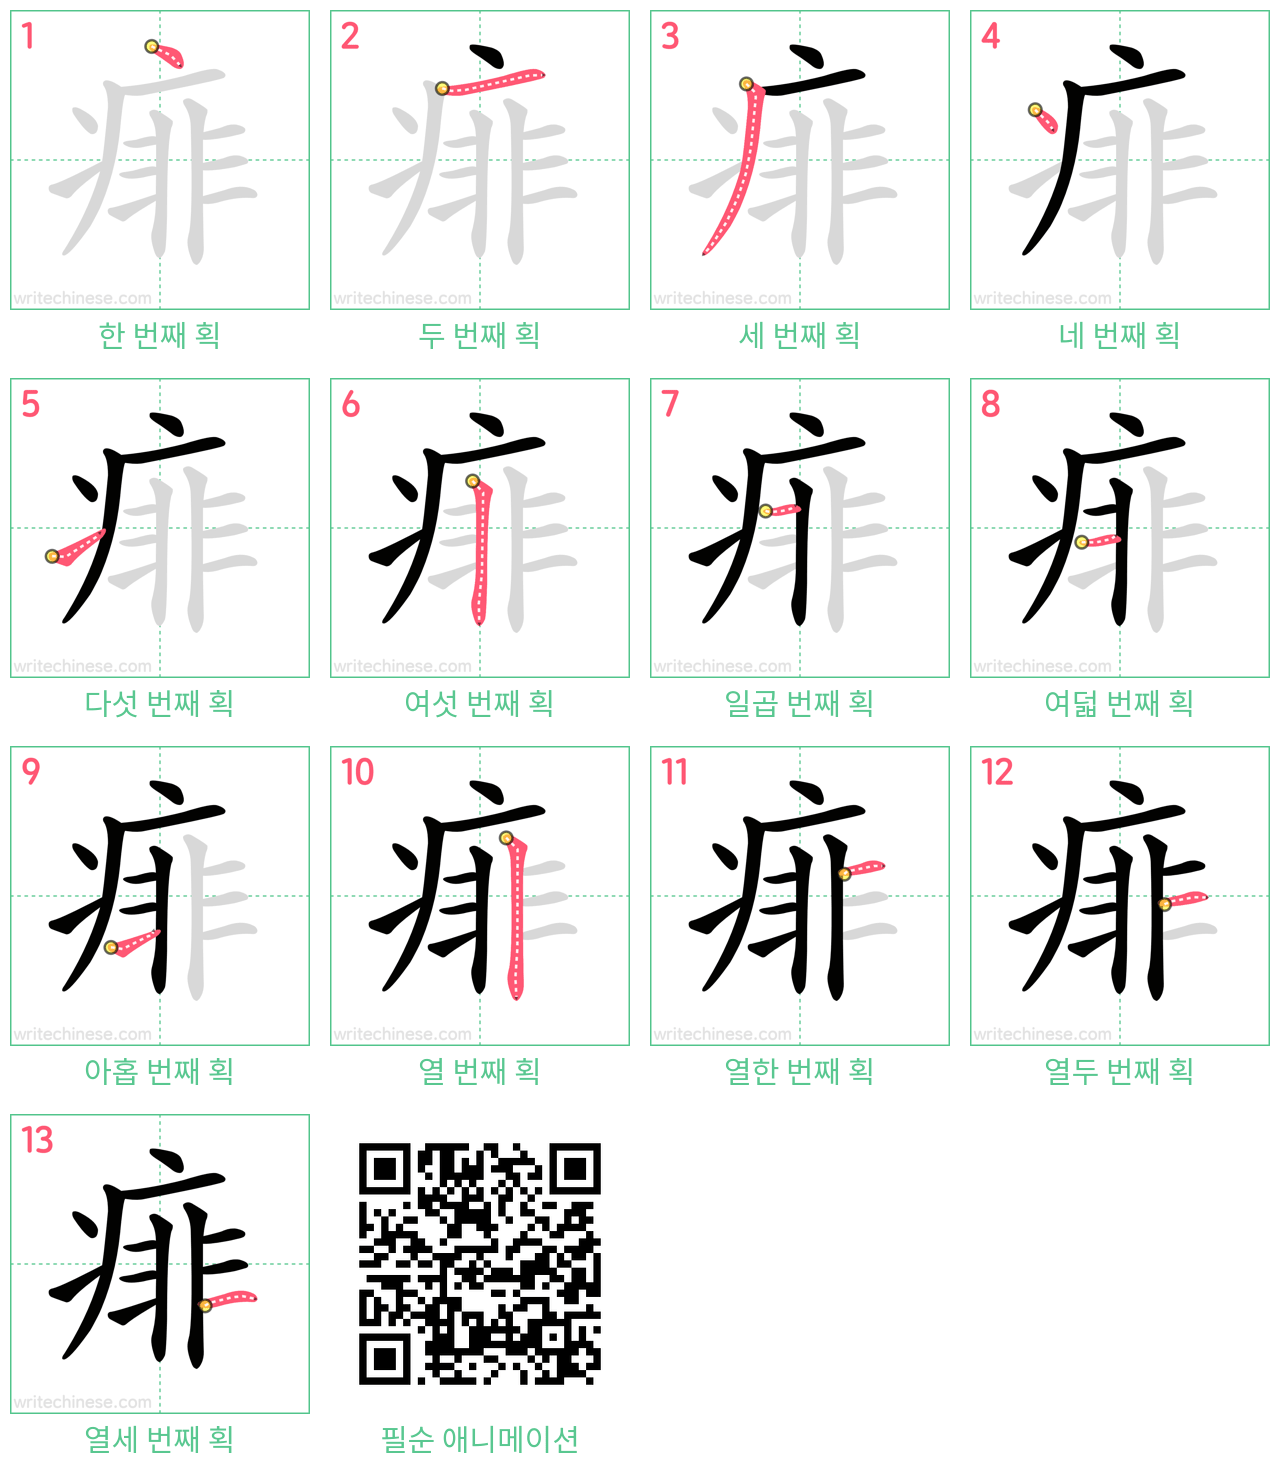 痱 step-by-step stroke order diagrams